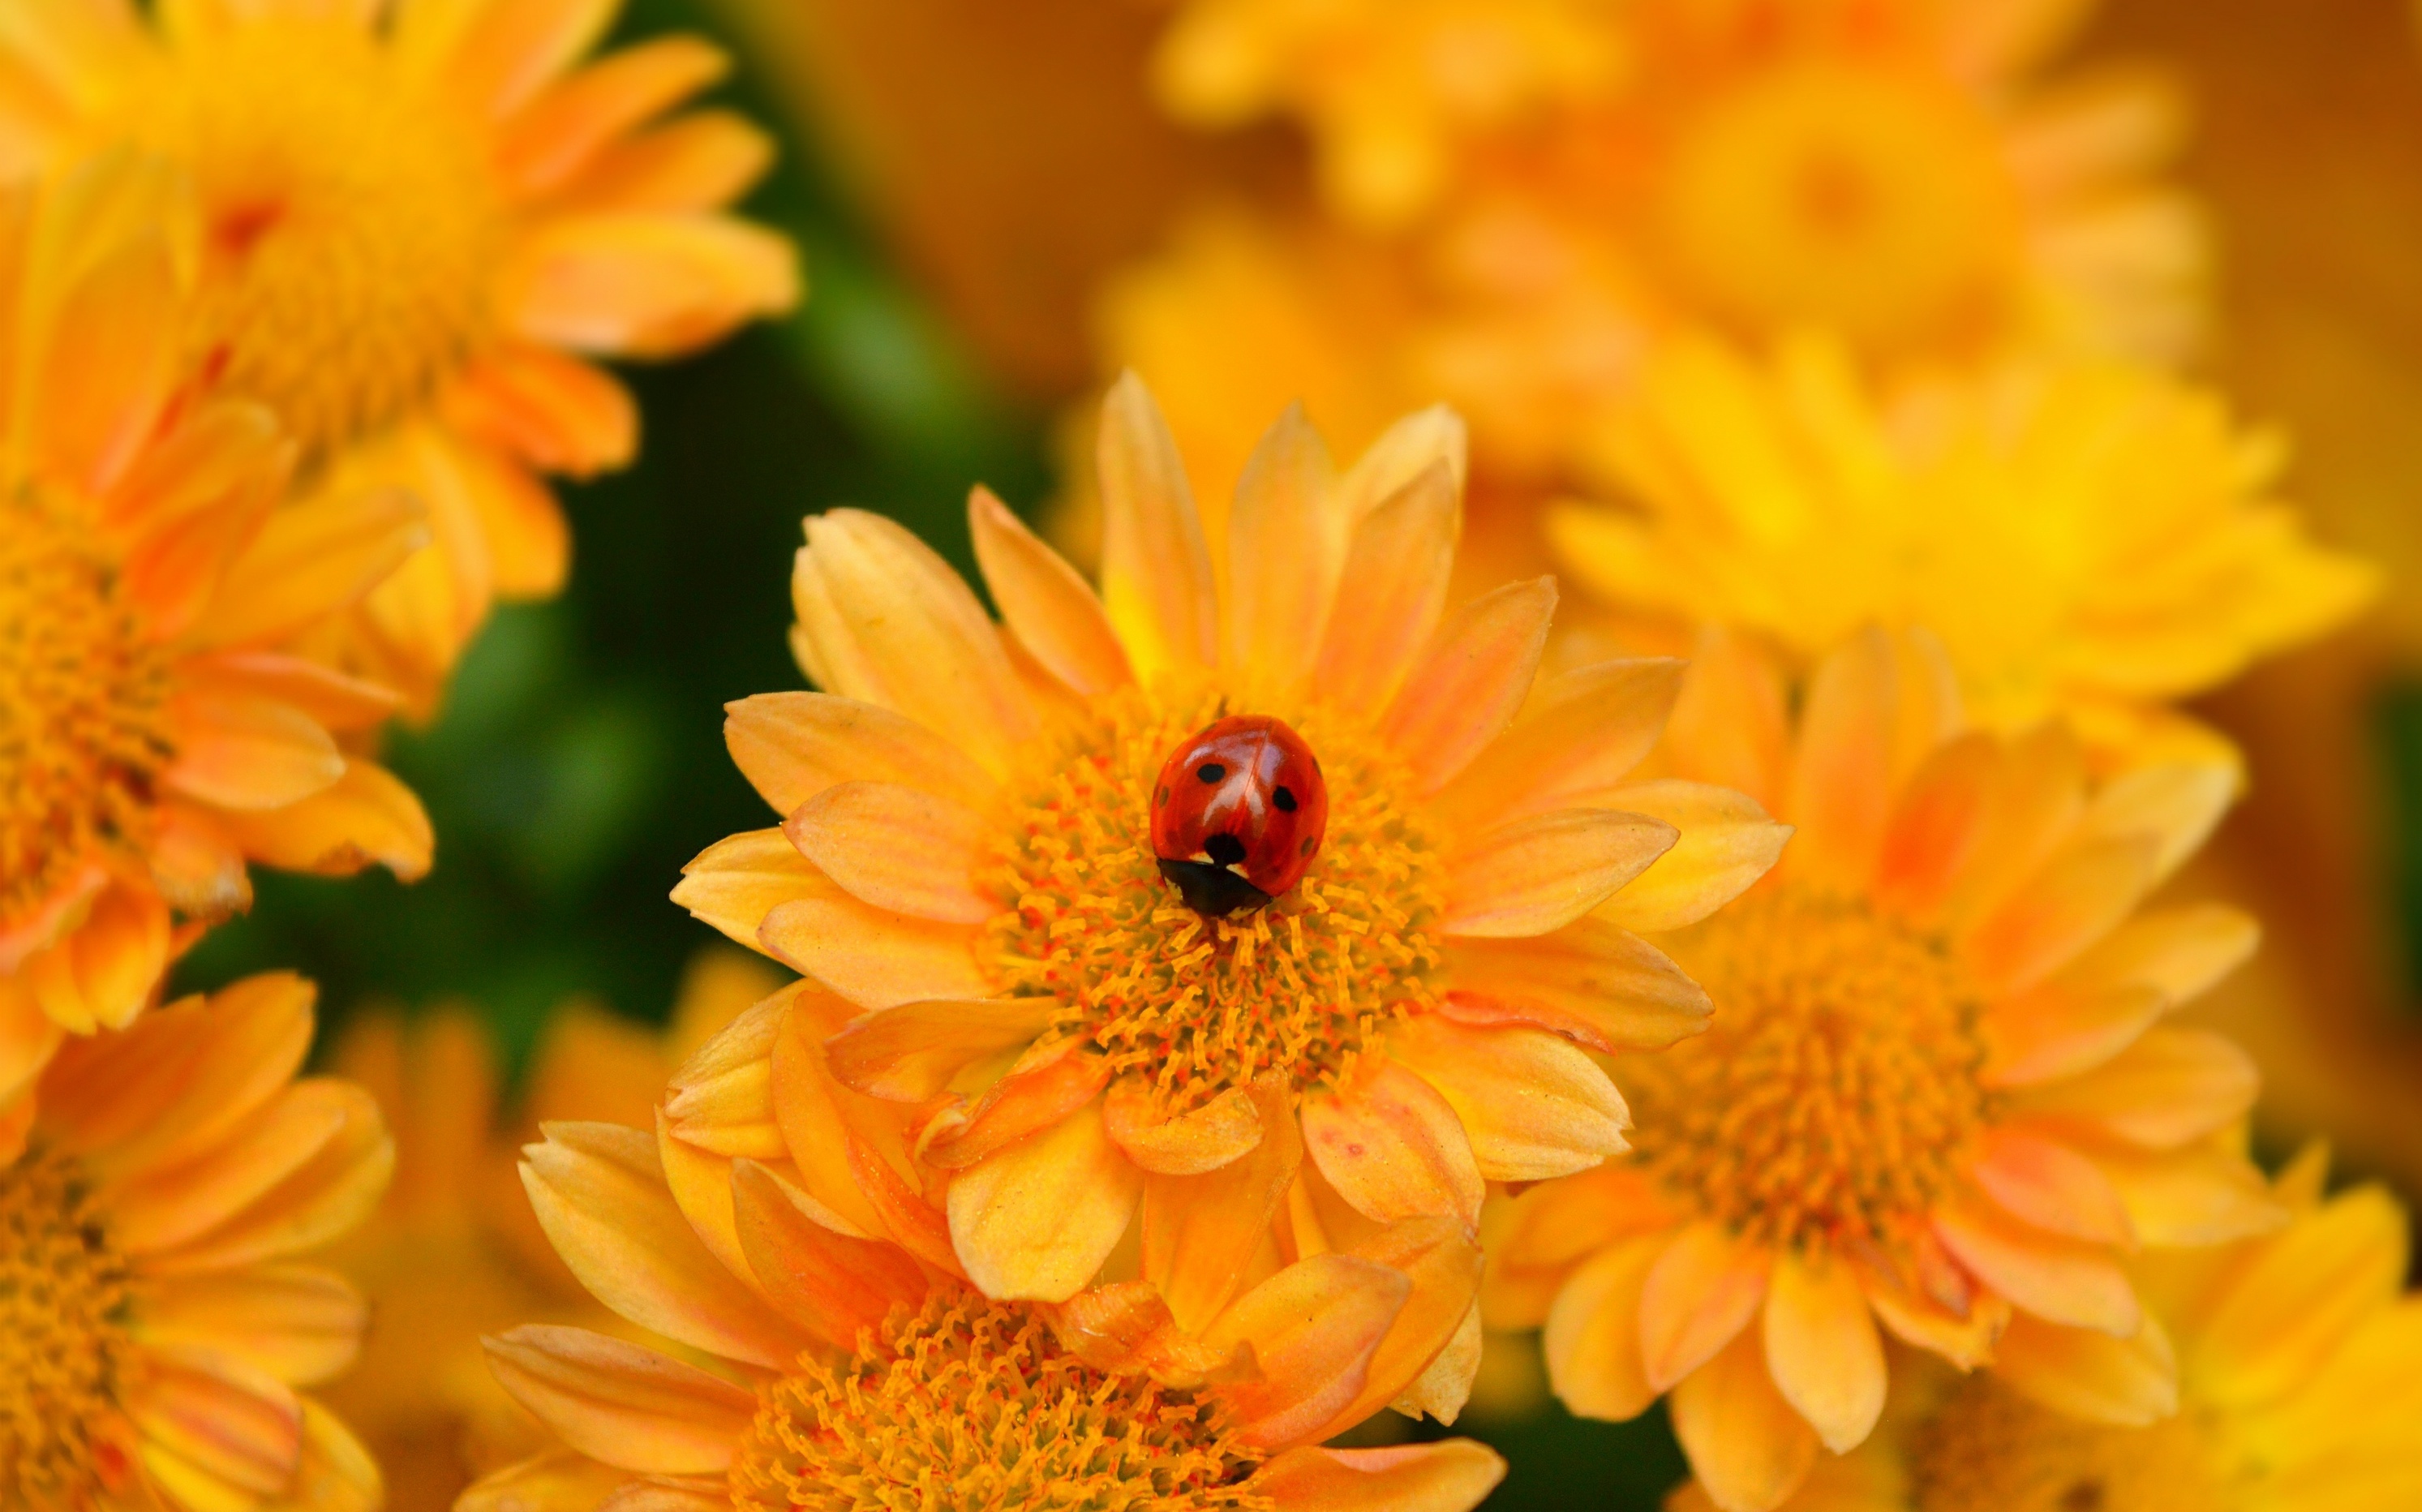 Flower Insect Ladybug Macro Yellow Flower 2986x1864